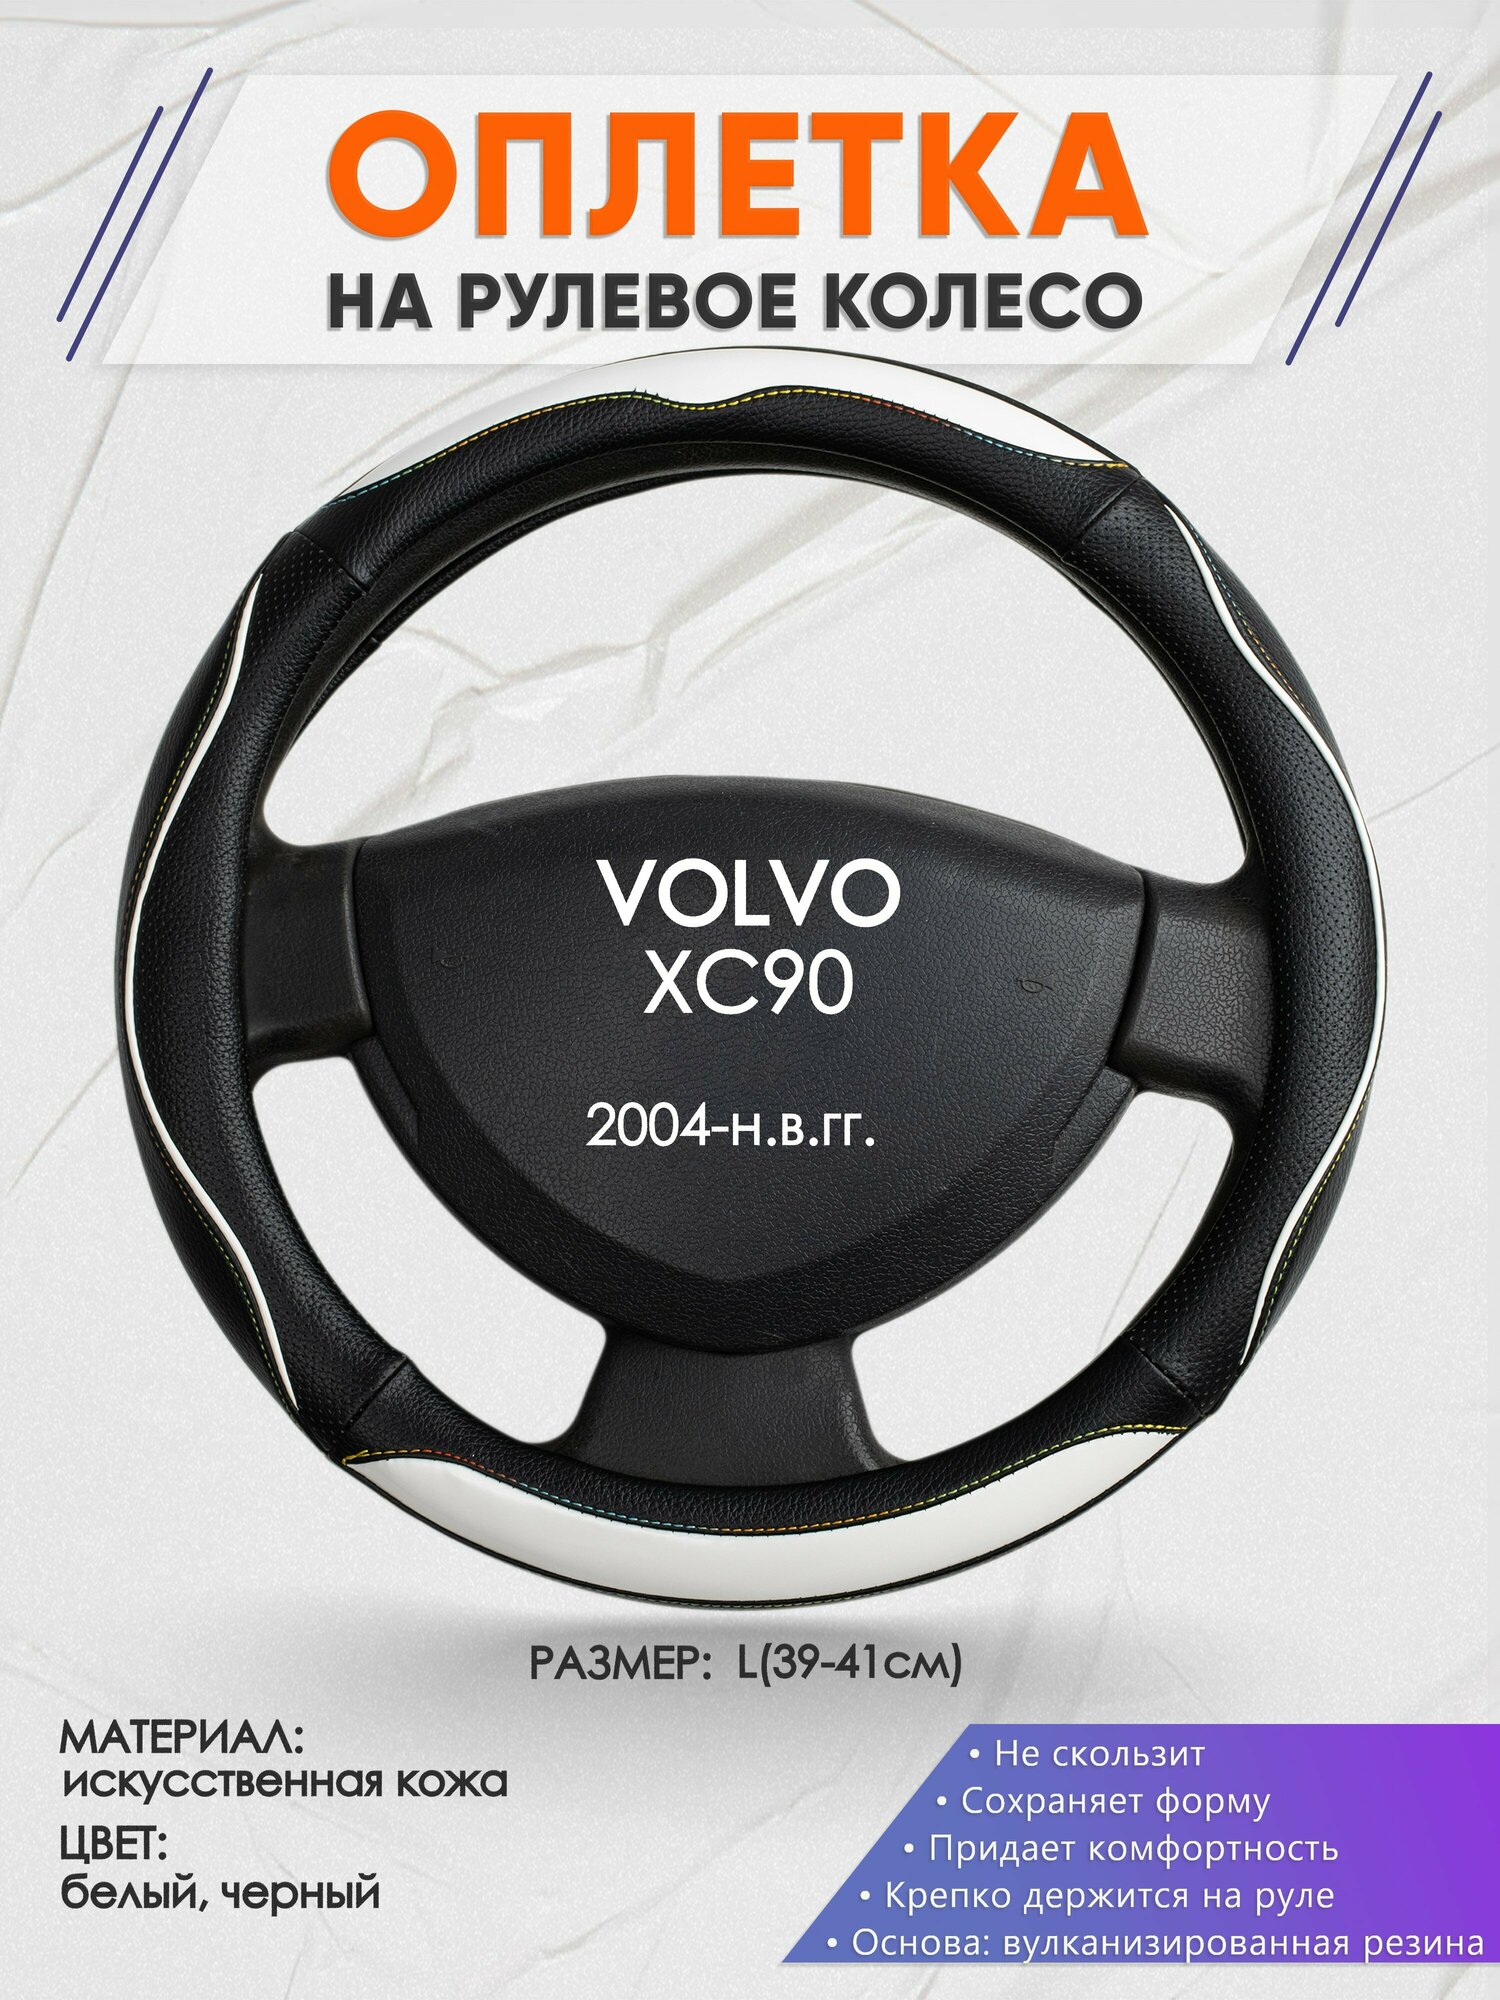 Оплетка на руль для VOLVO XC90(Вольво иксс90) 2004-н.в., L(39-41см), Искусственная кожа 75